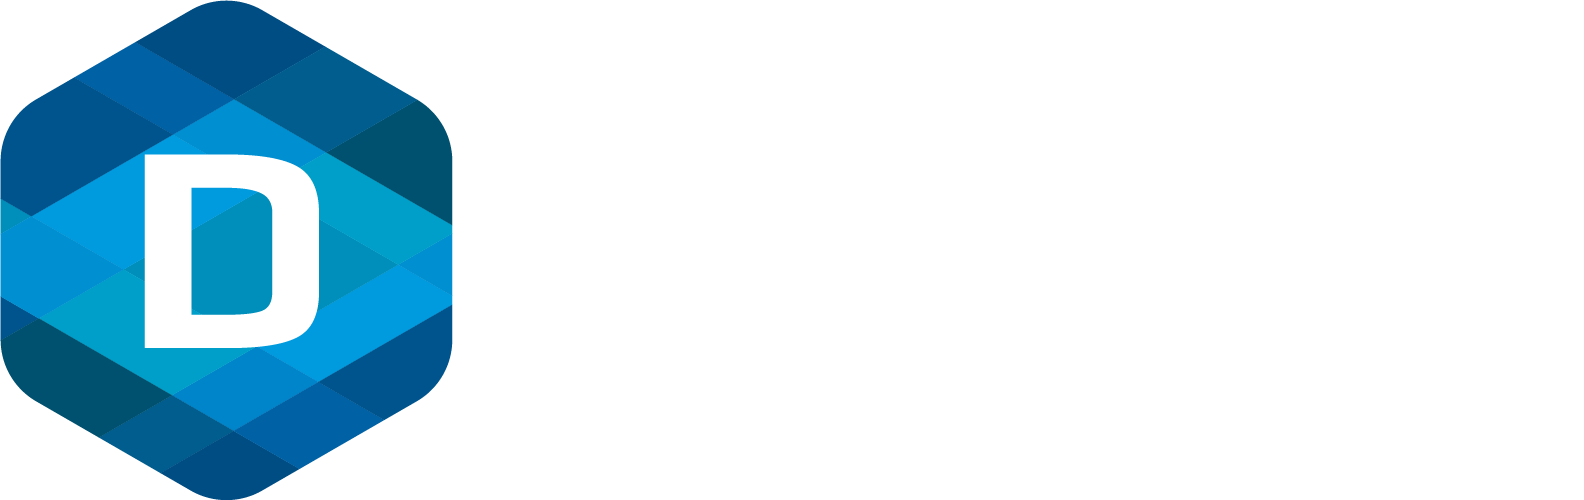 DiManEx, le partenaire mondial de Werk24